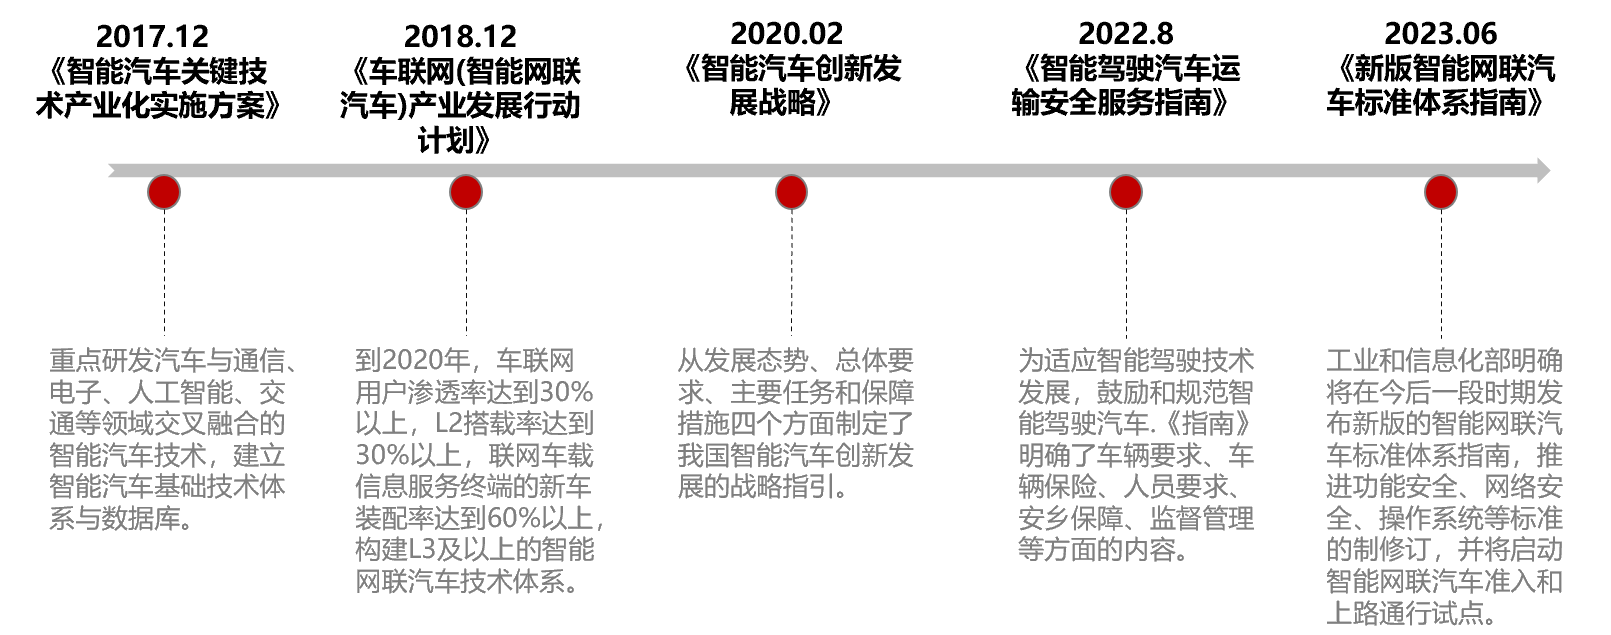 资料来源：工信部官网，交通运输部官网，中国新闻网，长江证券研究所，截至2023/6